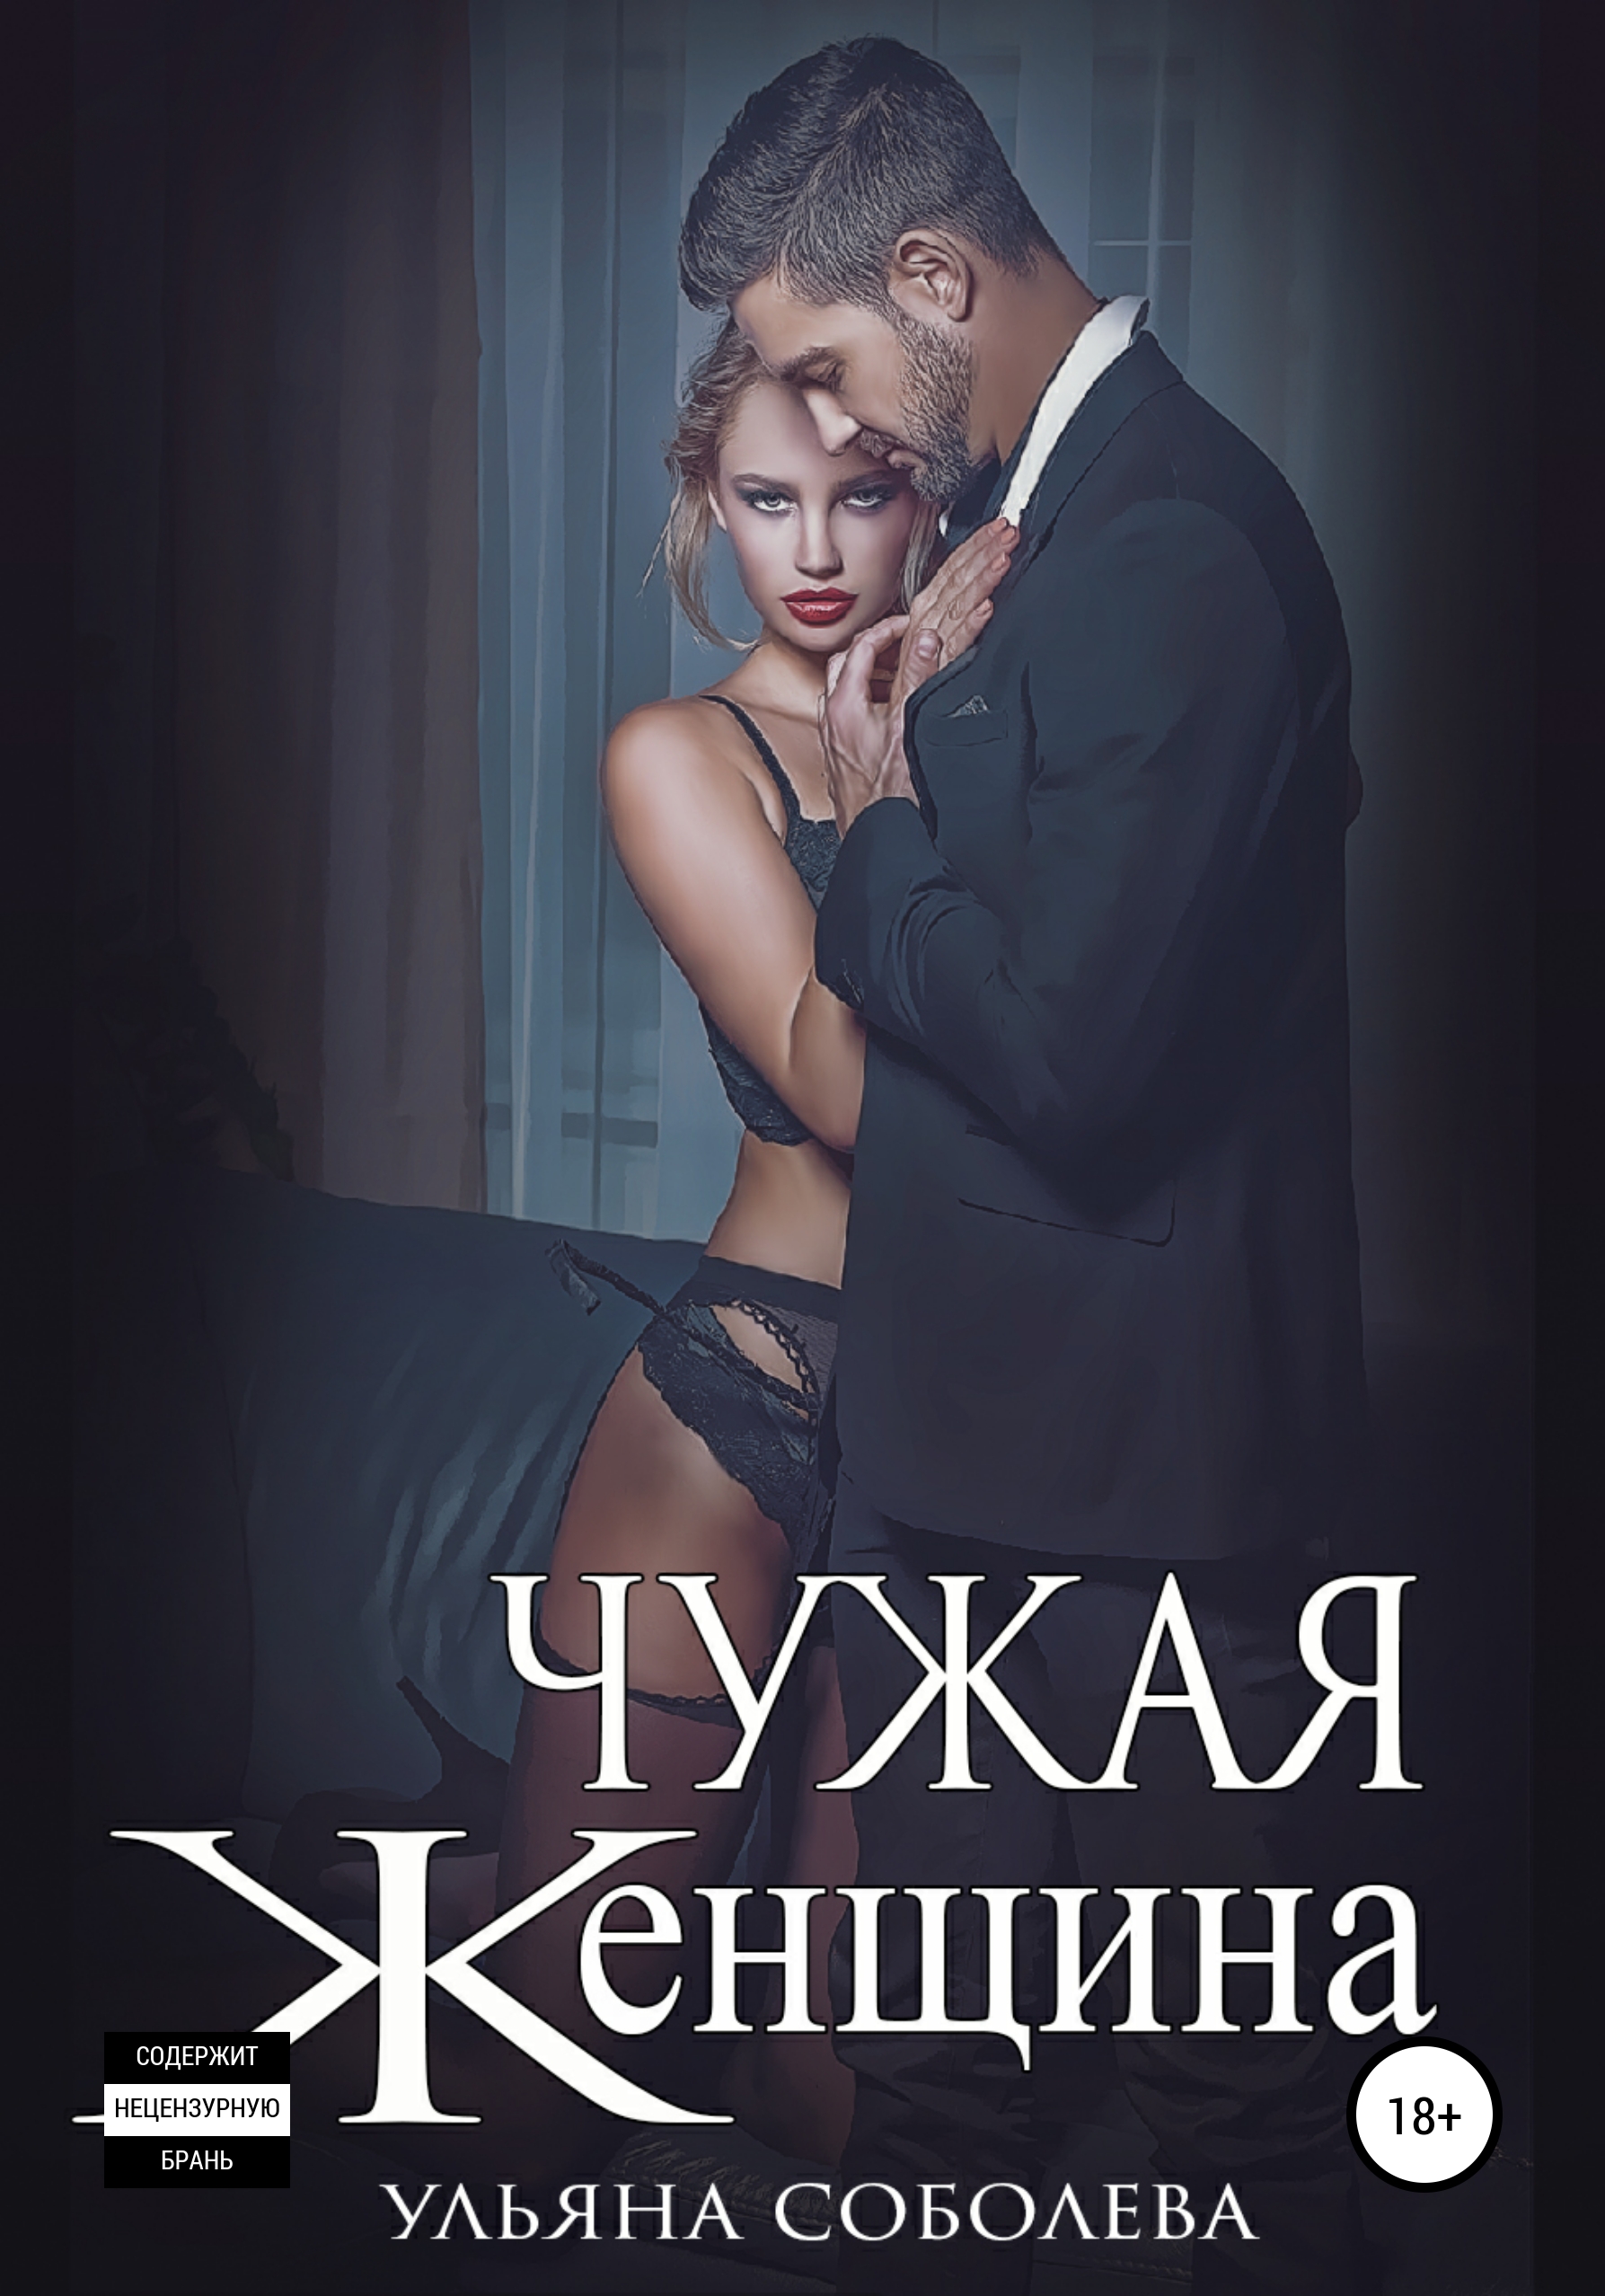 Порно марта соболевская муж, Секс видео ролики на chelmass.ru